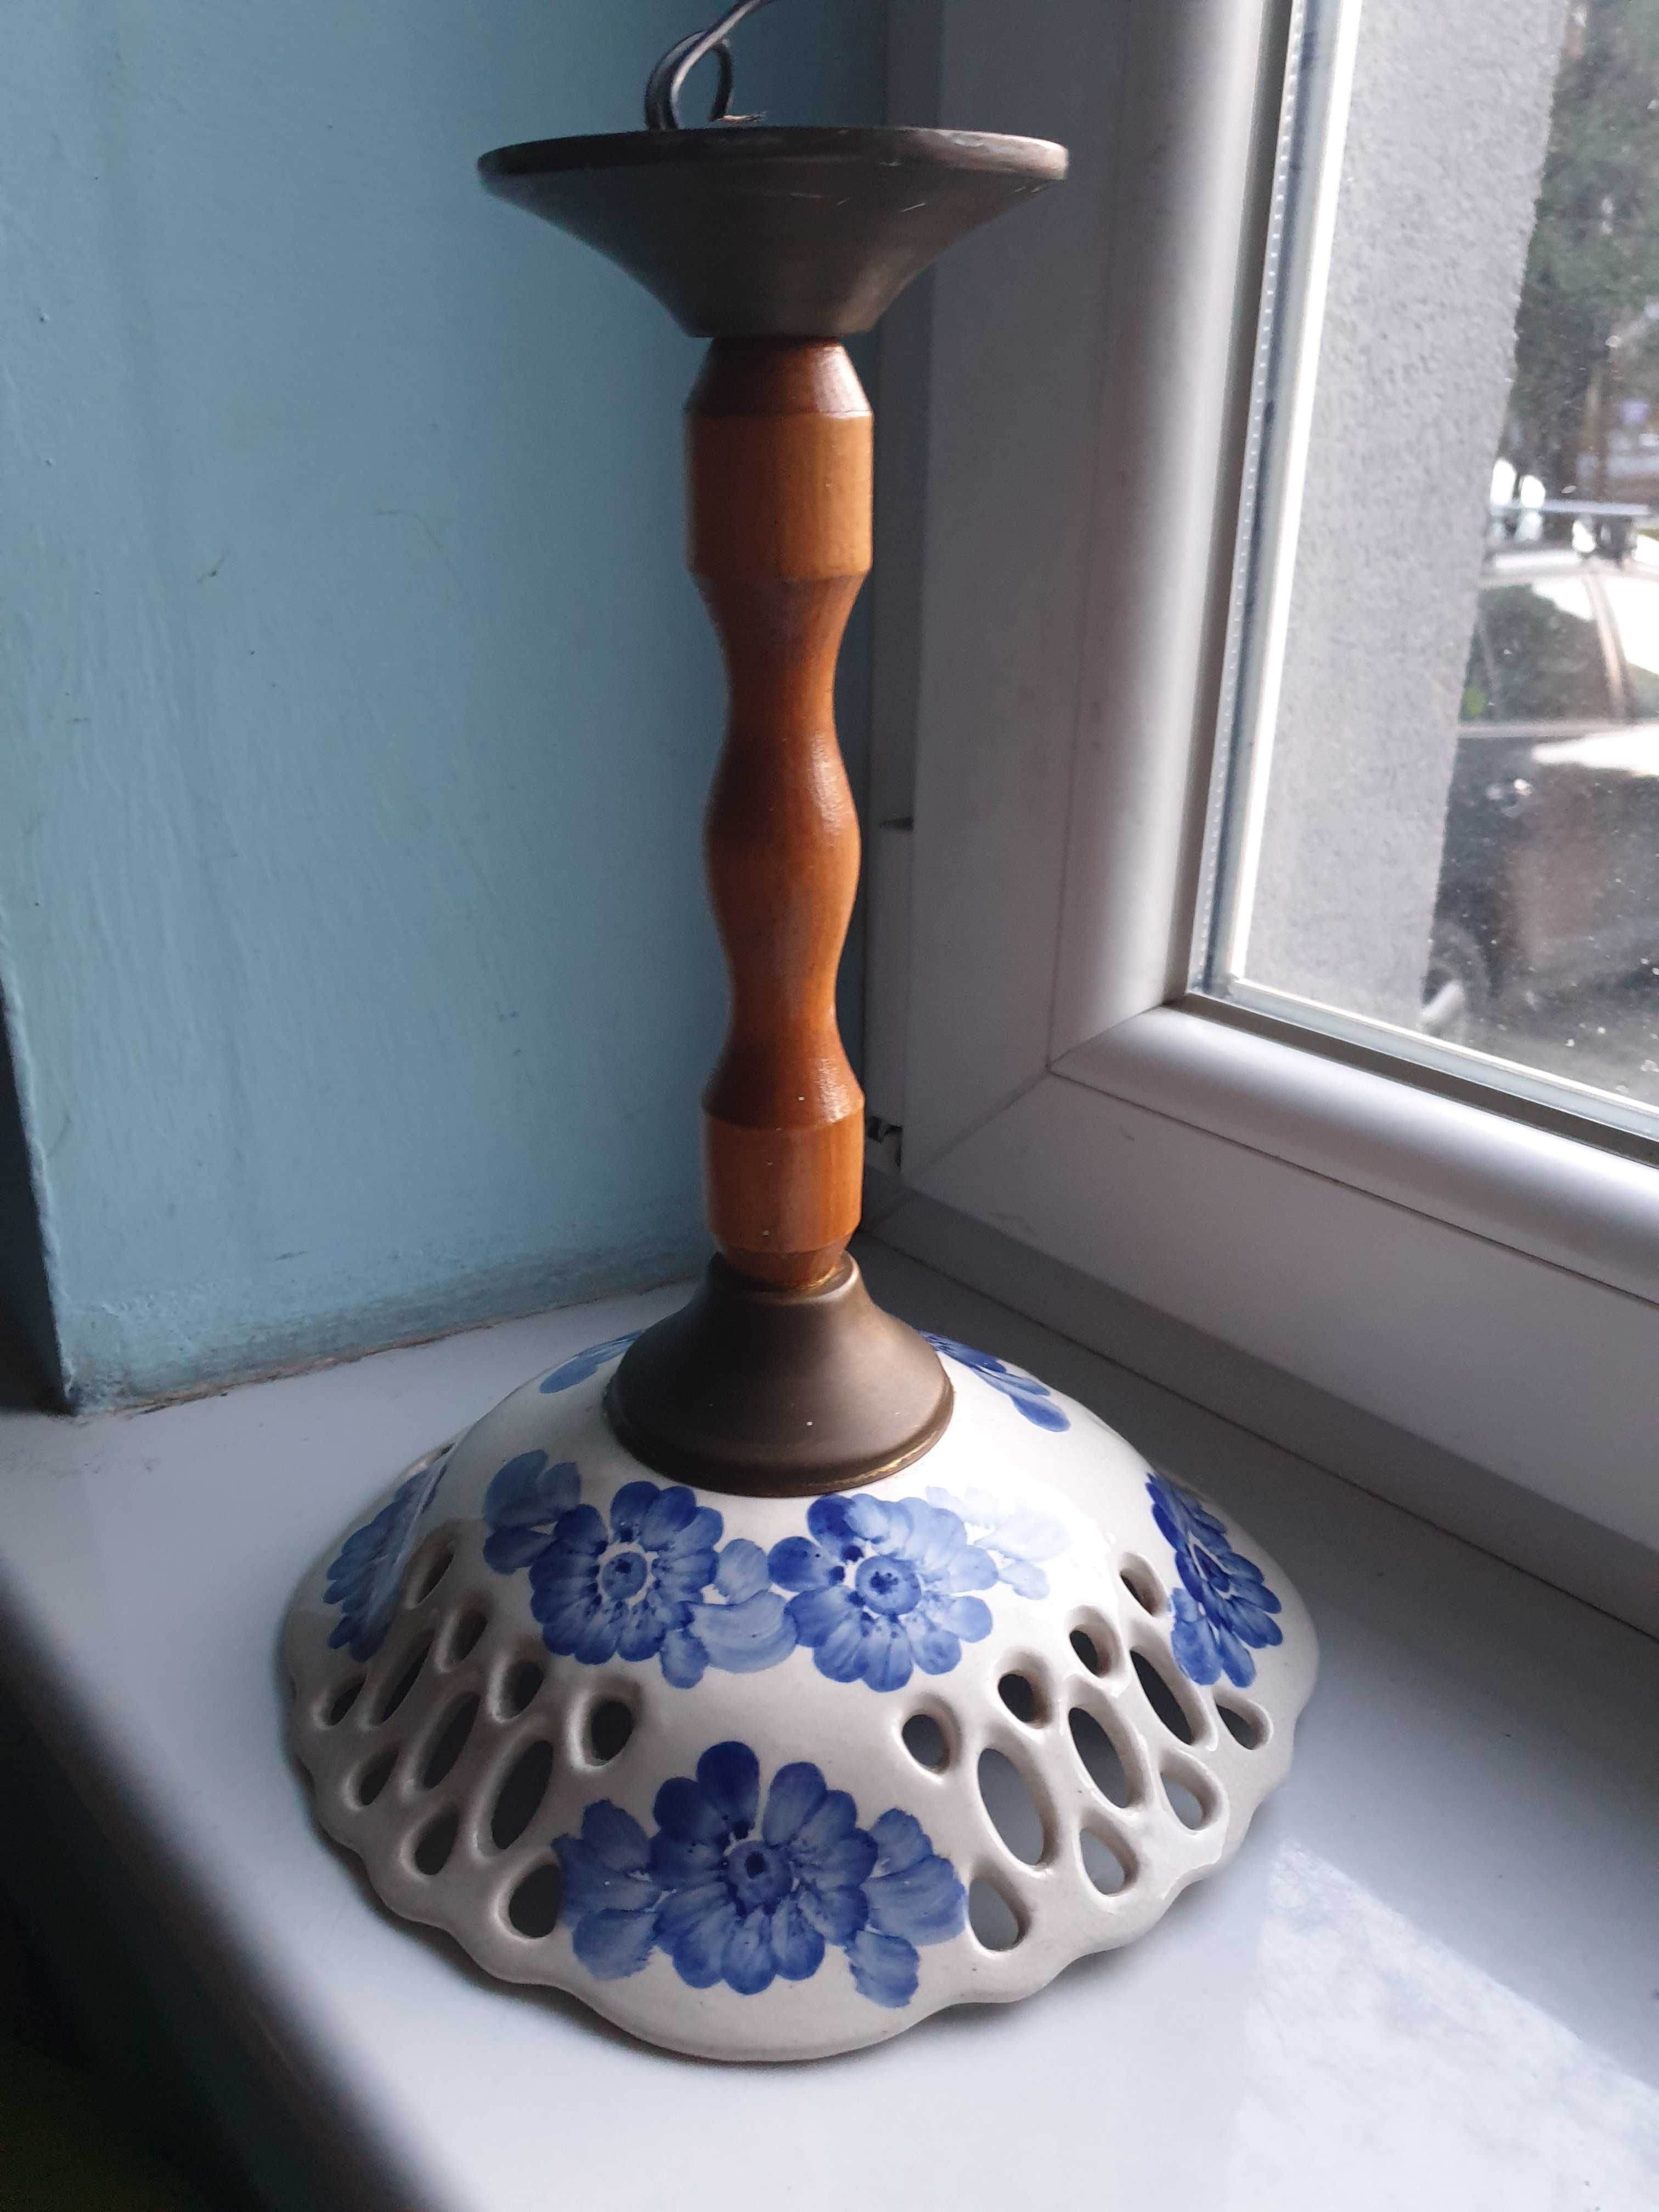 lampa ceramiczna ażurowa Włocławek lata 70.